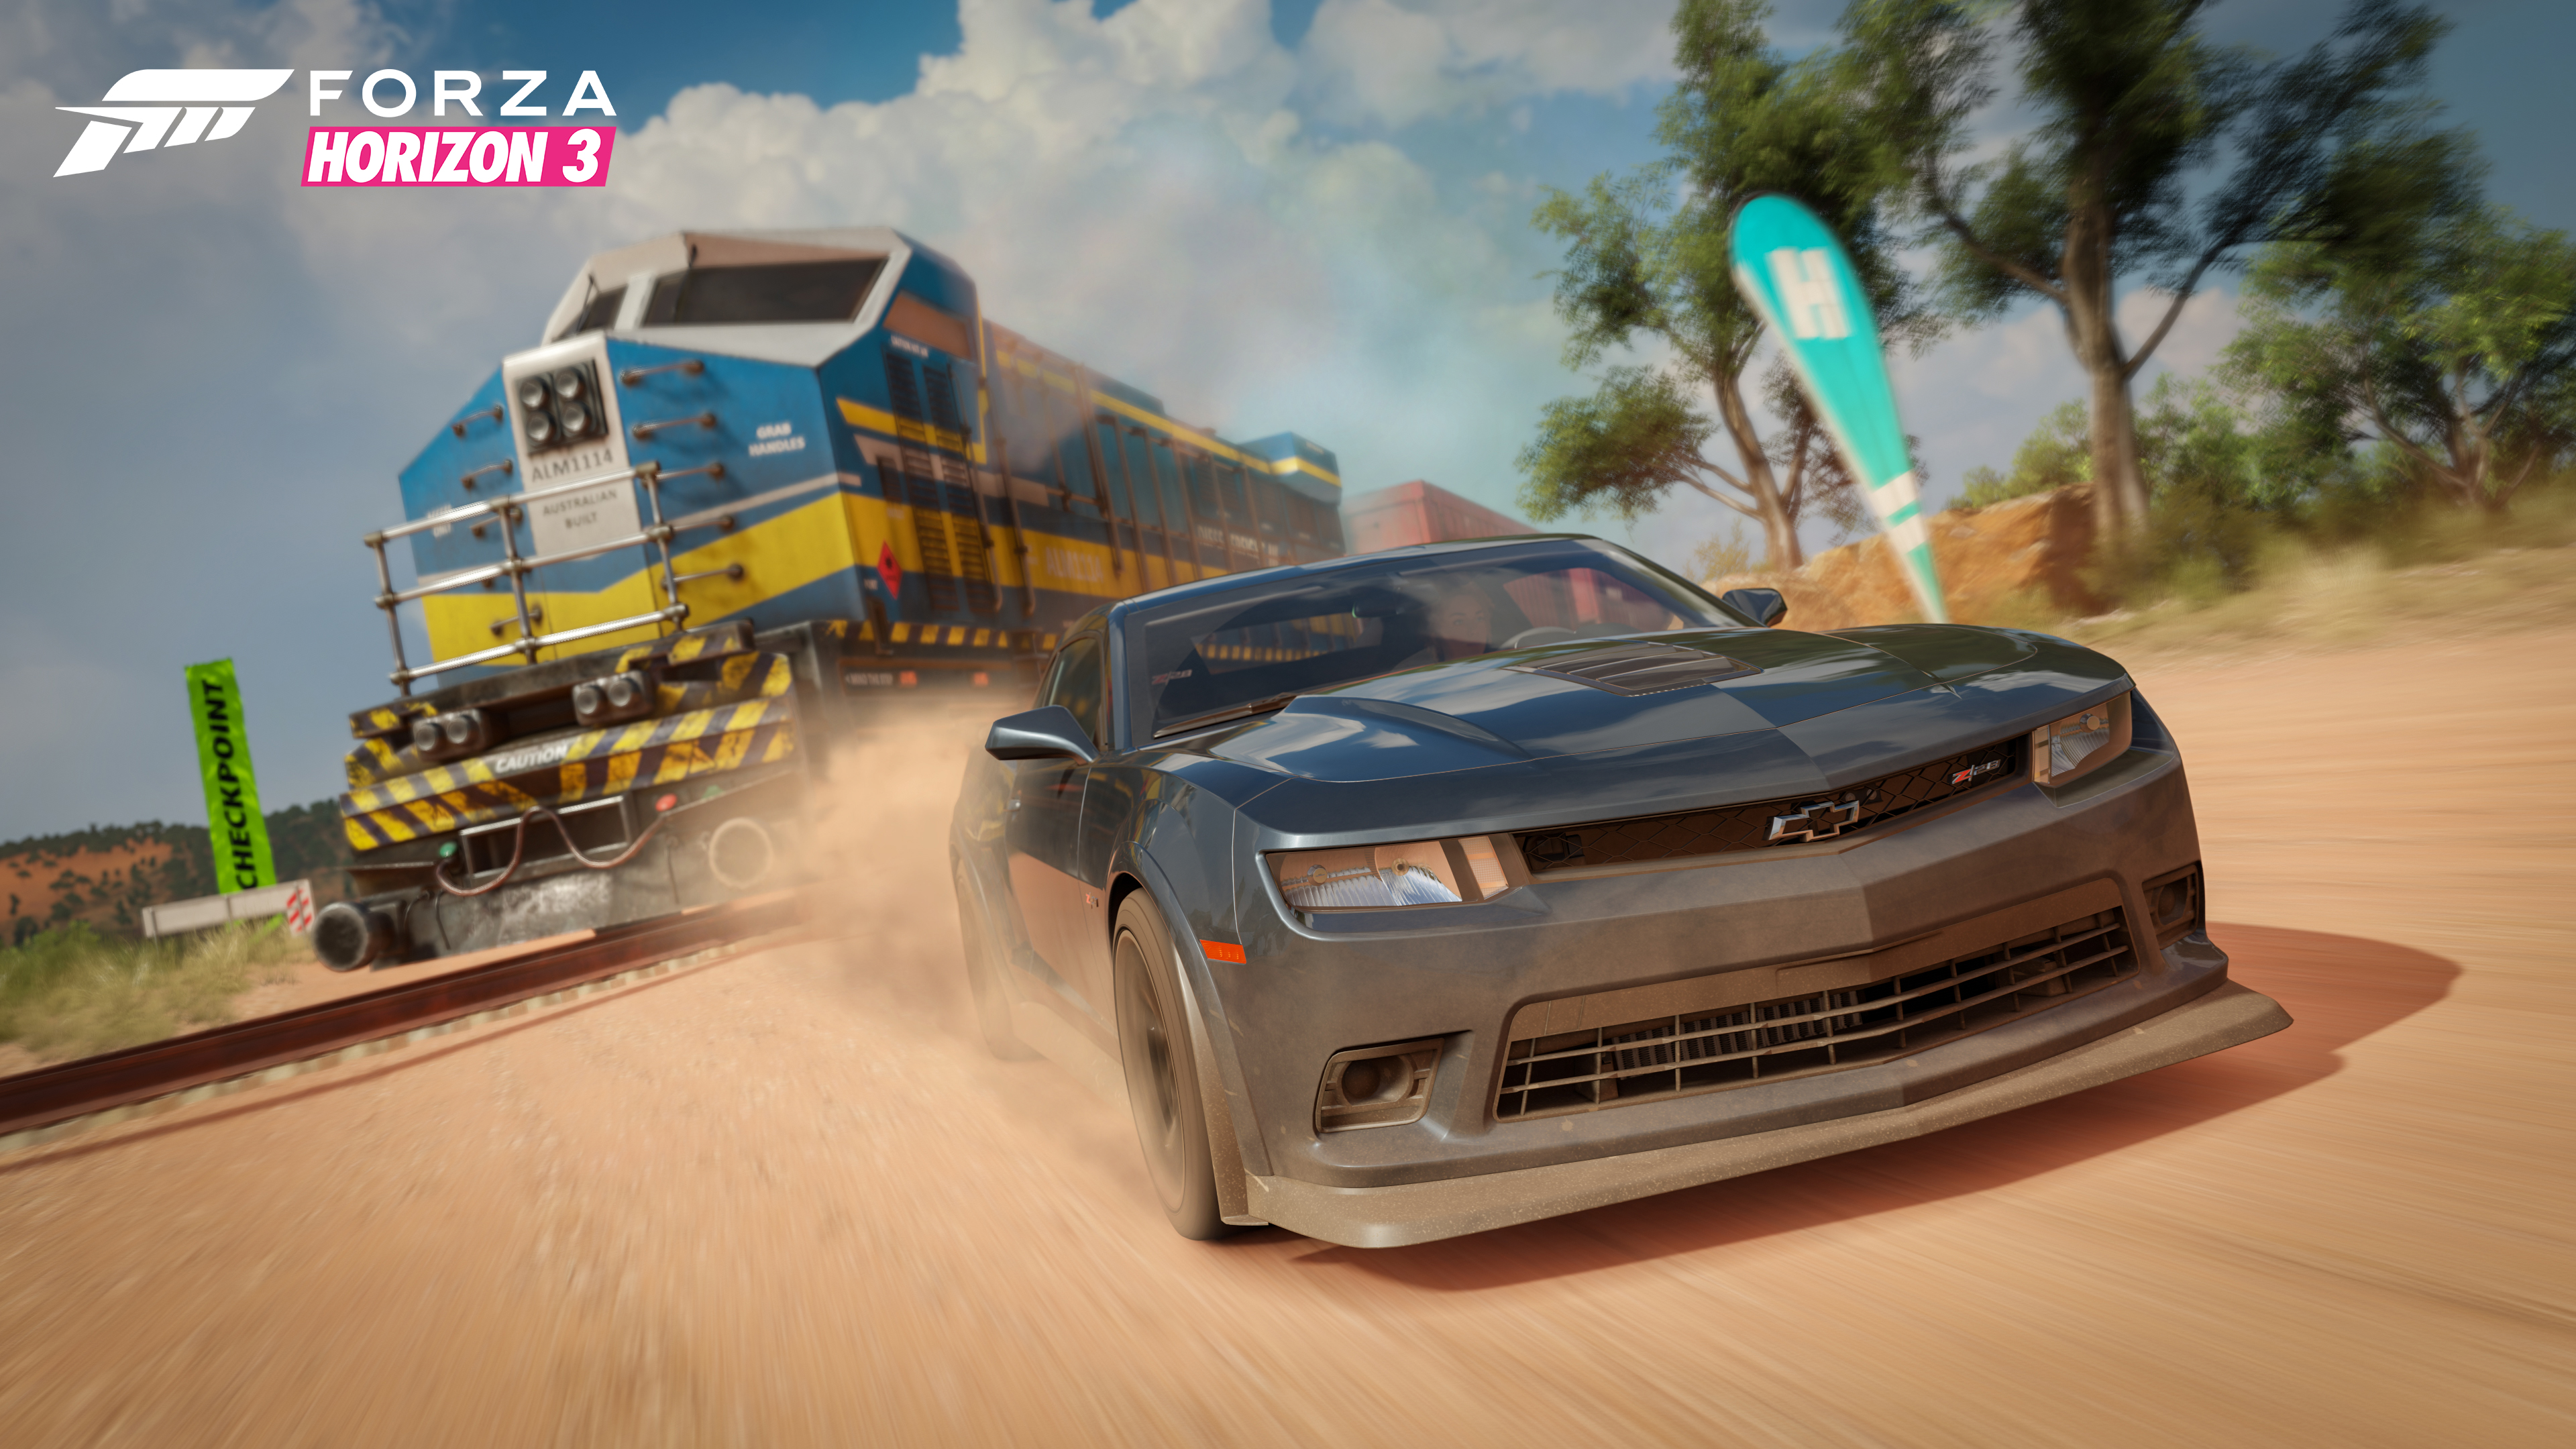 عرب هاردوير - شاهد عرض الإطلاق الرائع للعبة Forza Horizon 3